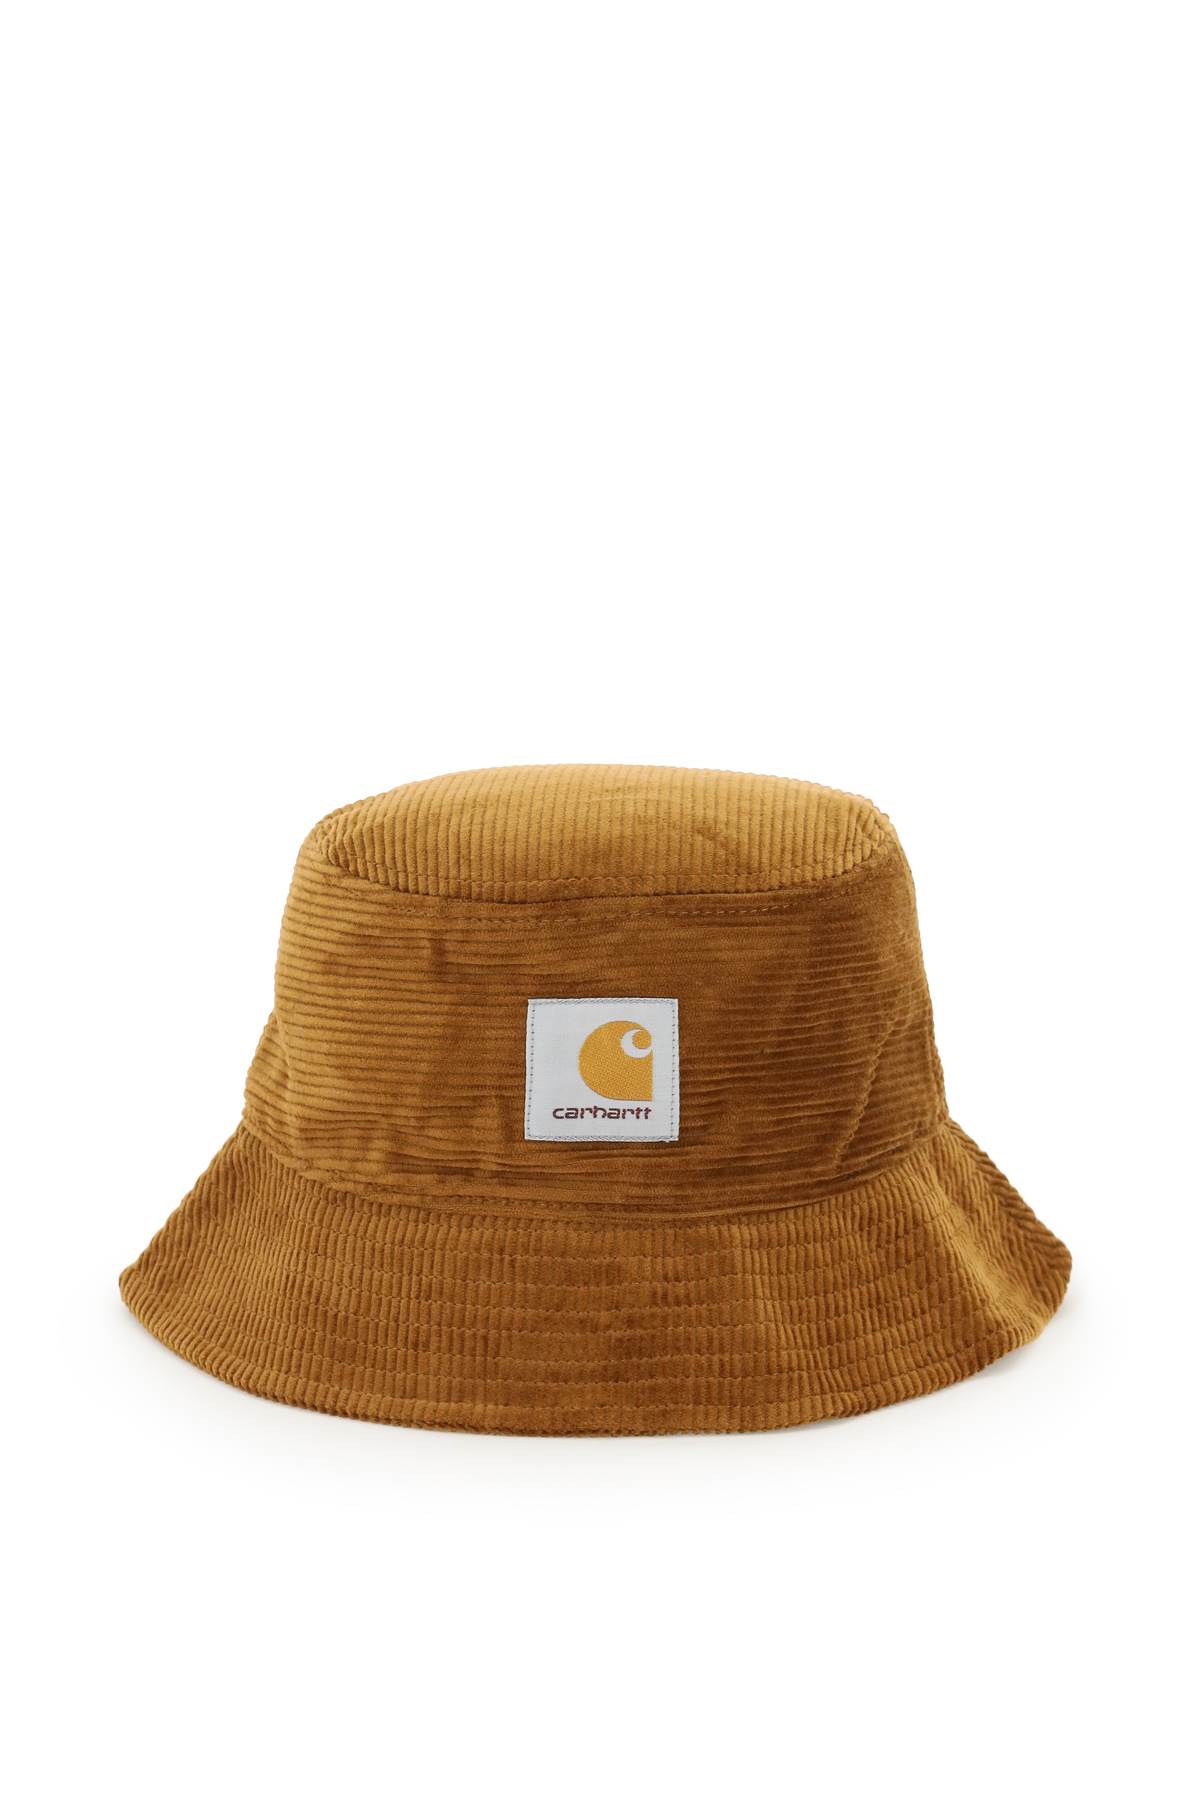 Carhartt Corduroy Bucket Hat